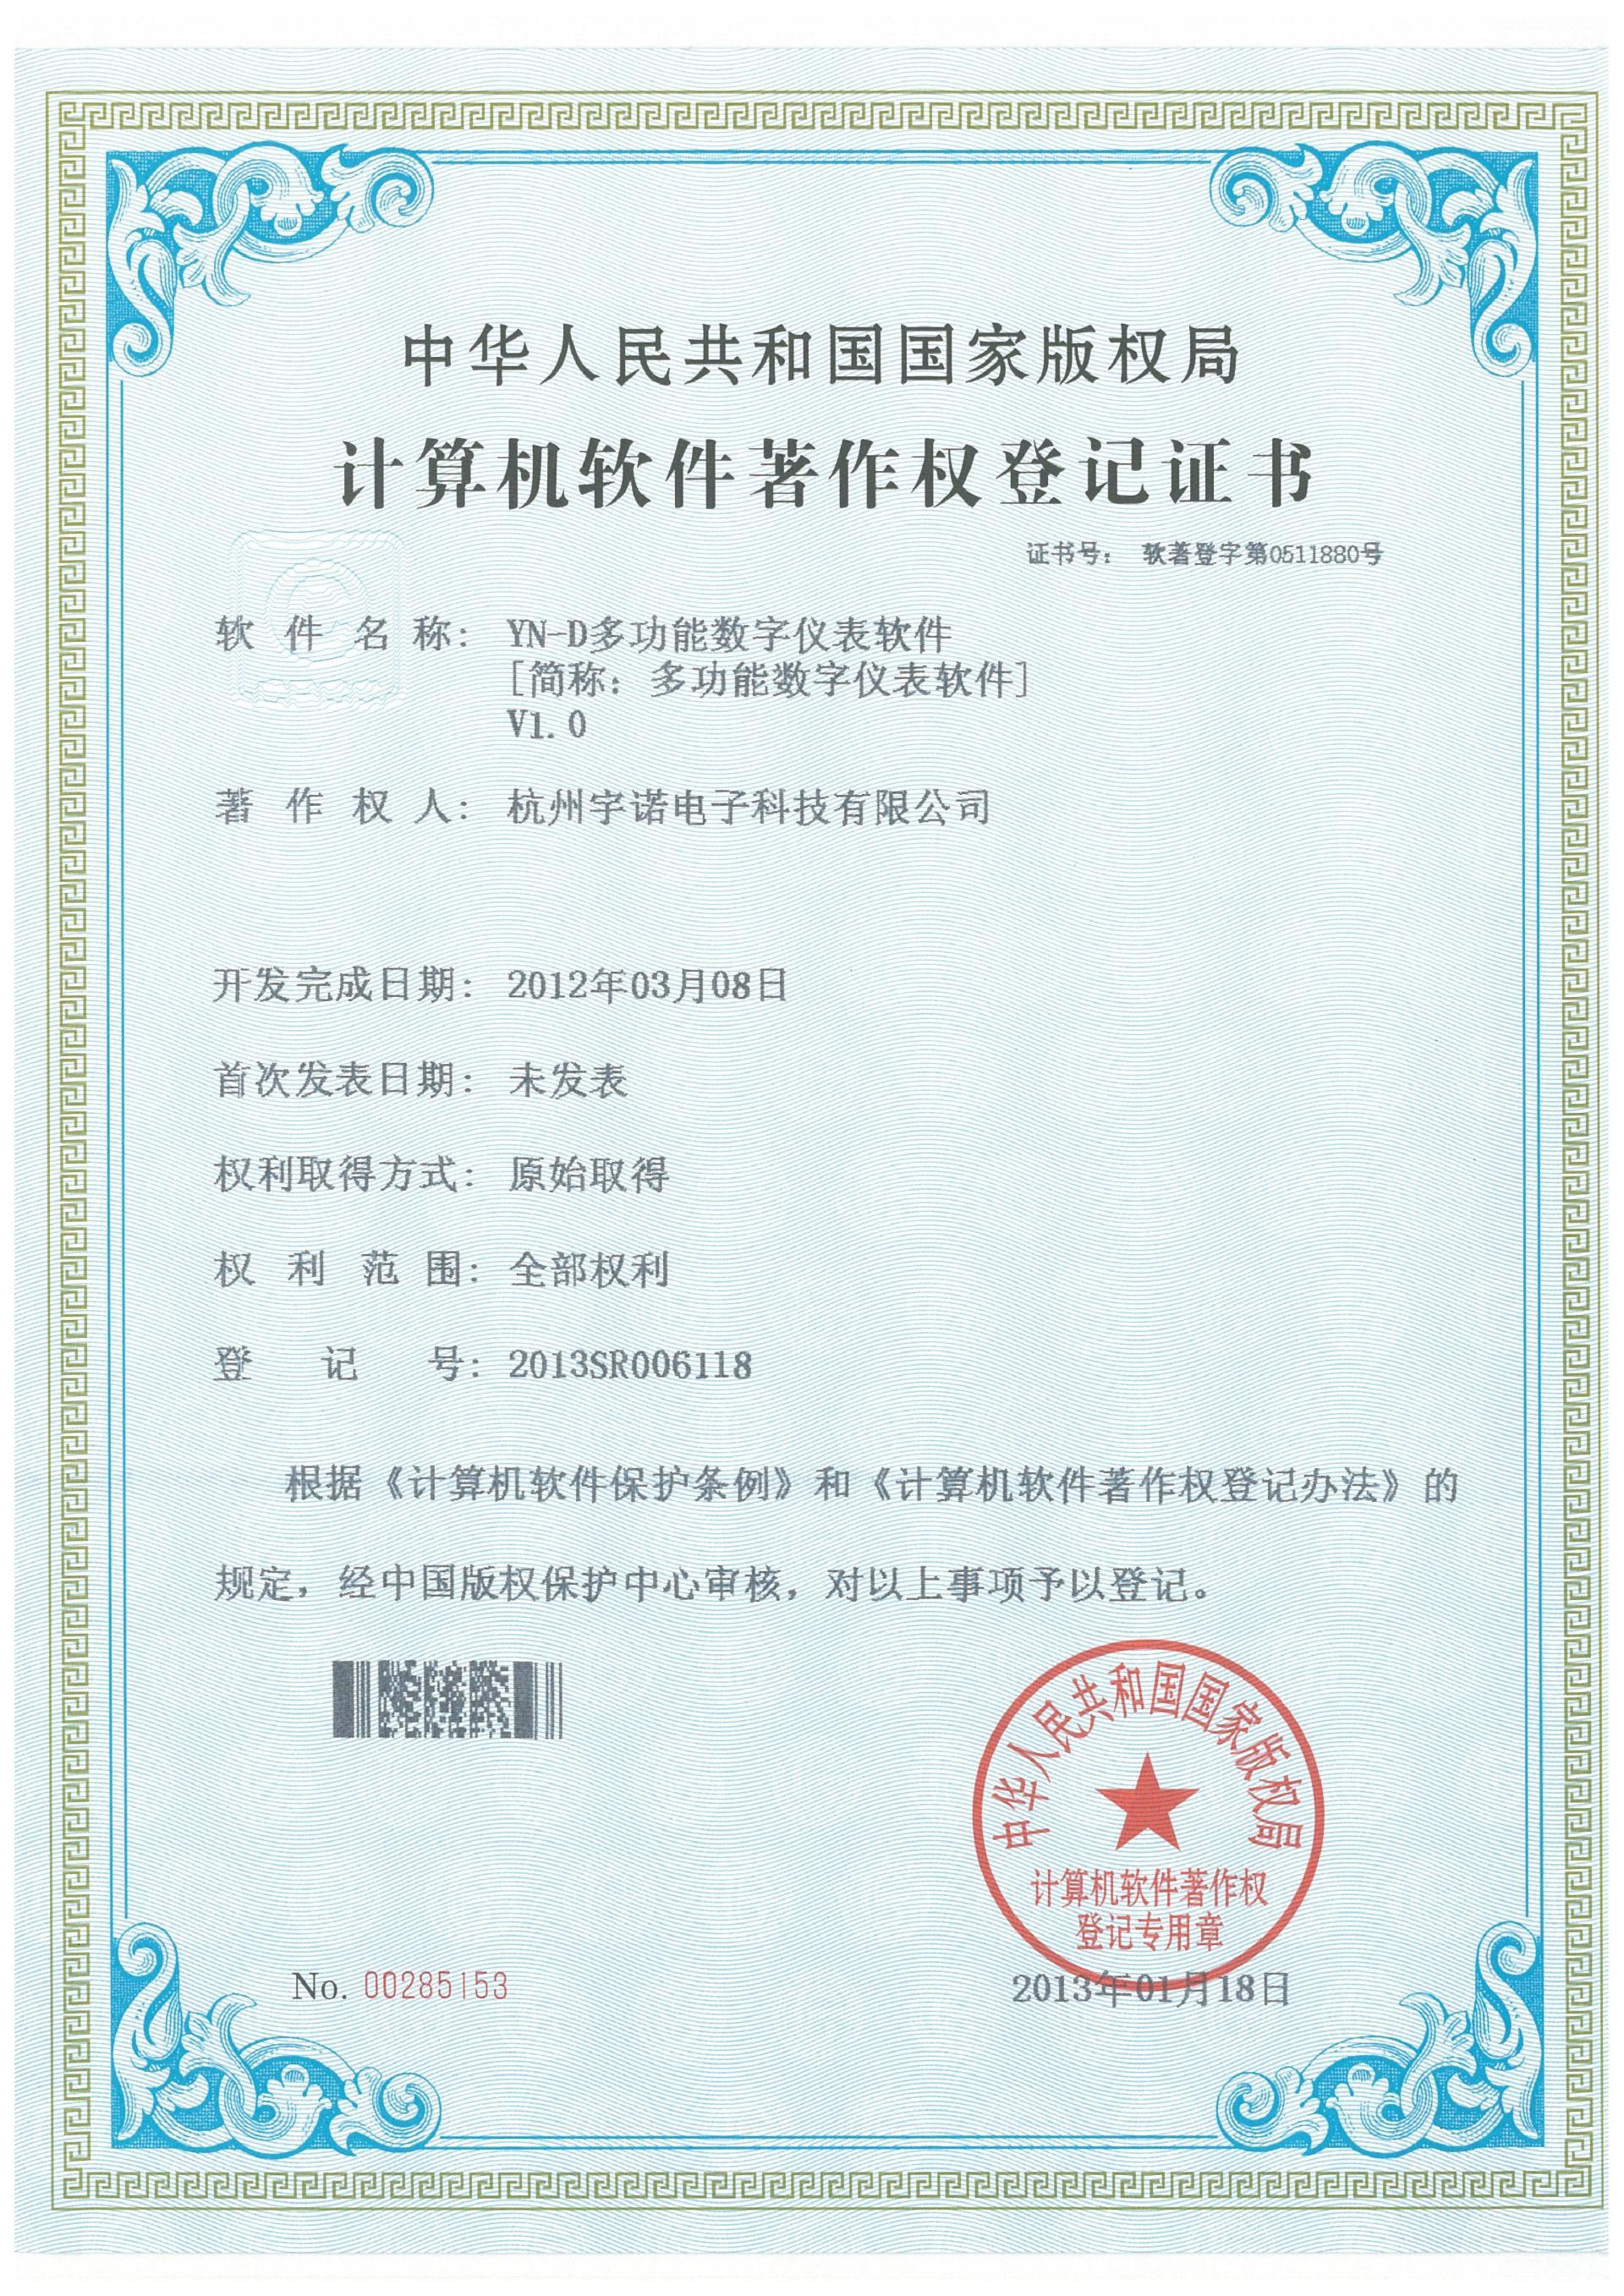 YN-D多功能数字仪表计算机软件著作权登记证书